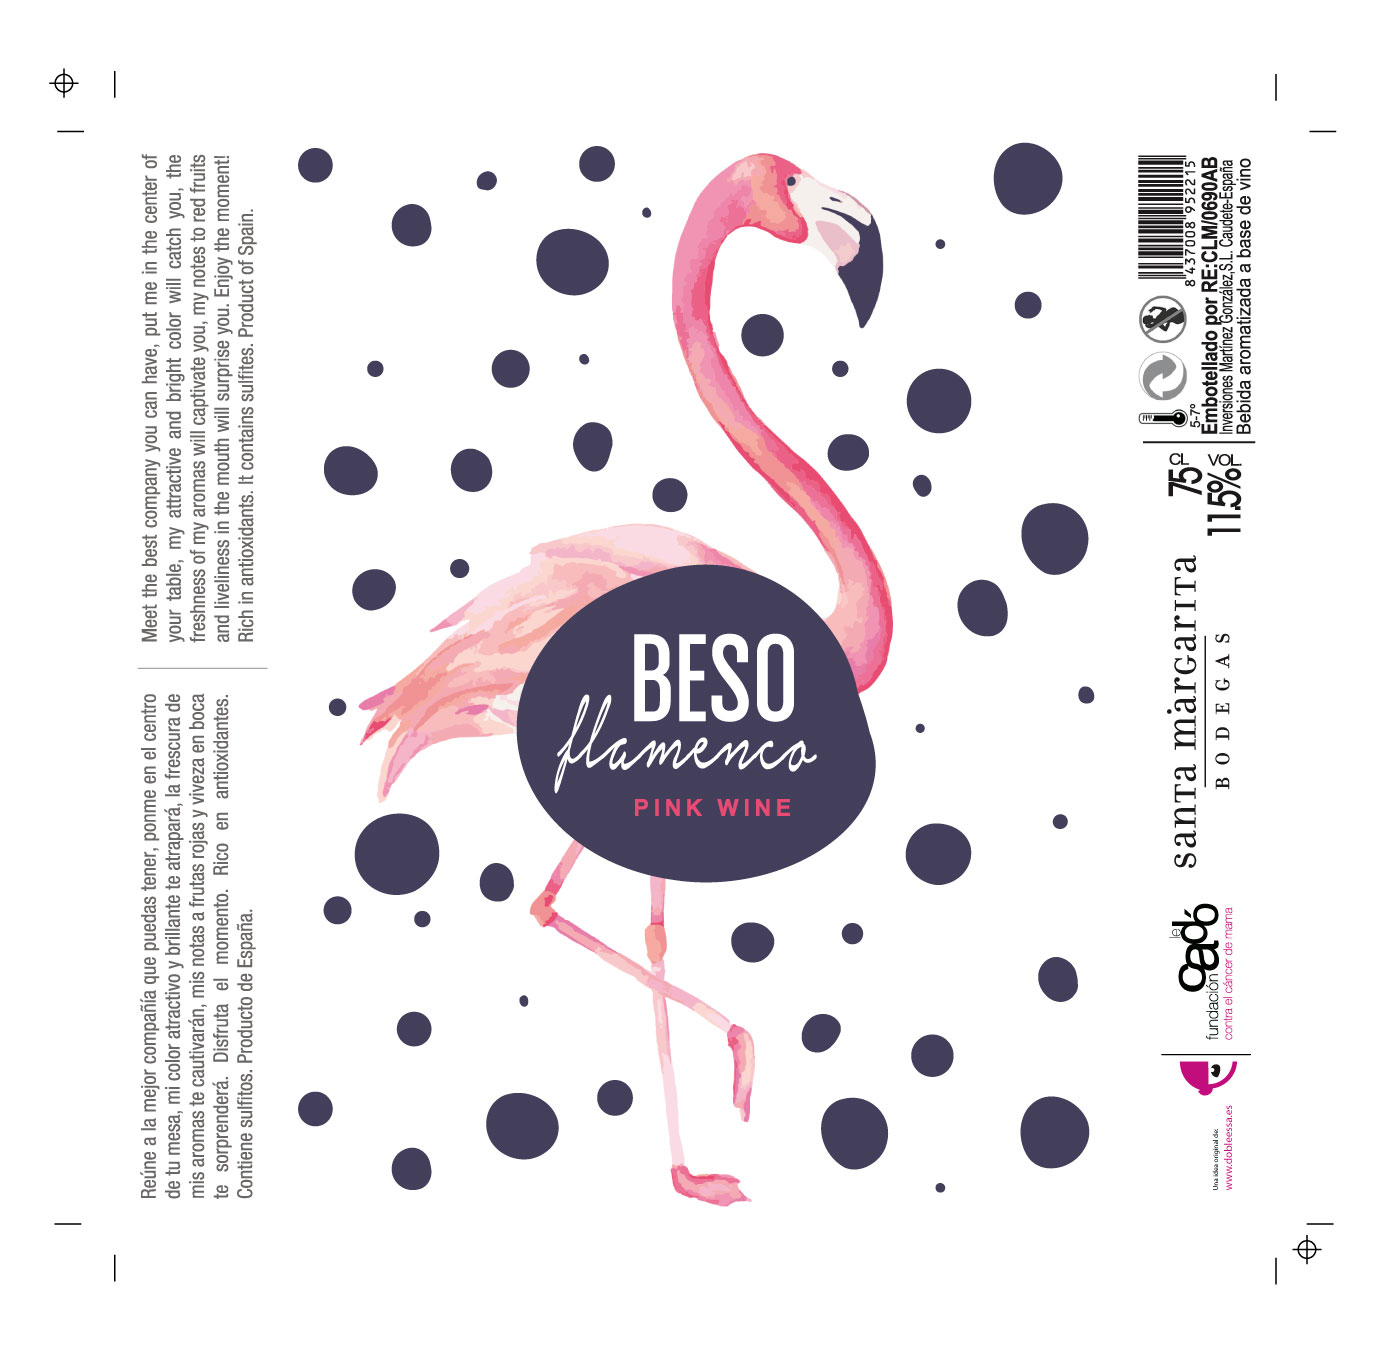 Beso Flamenco Packaging